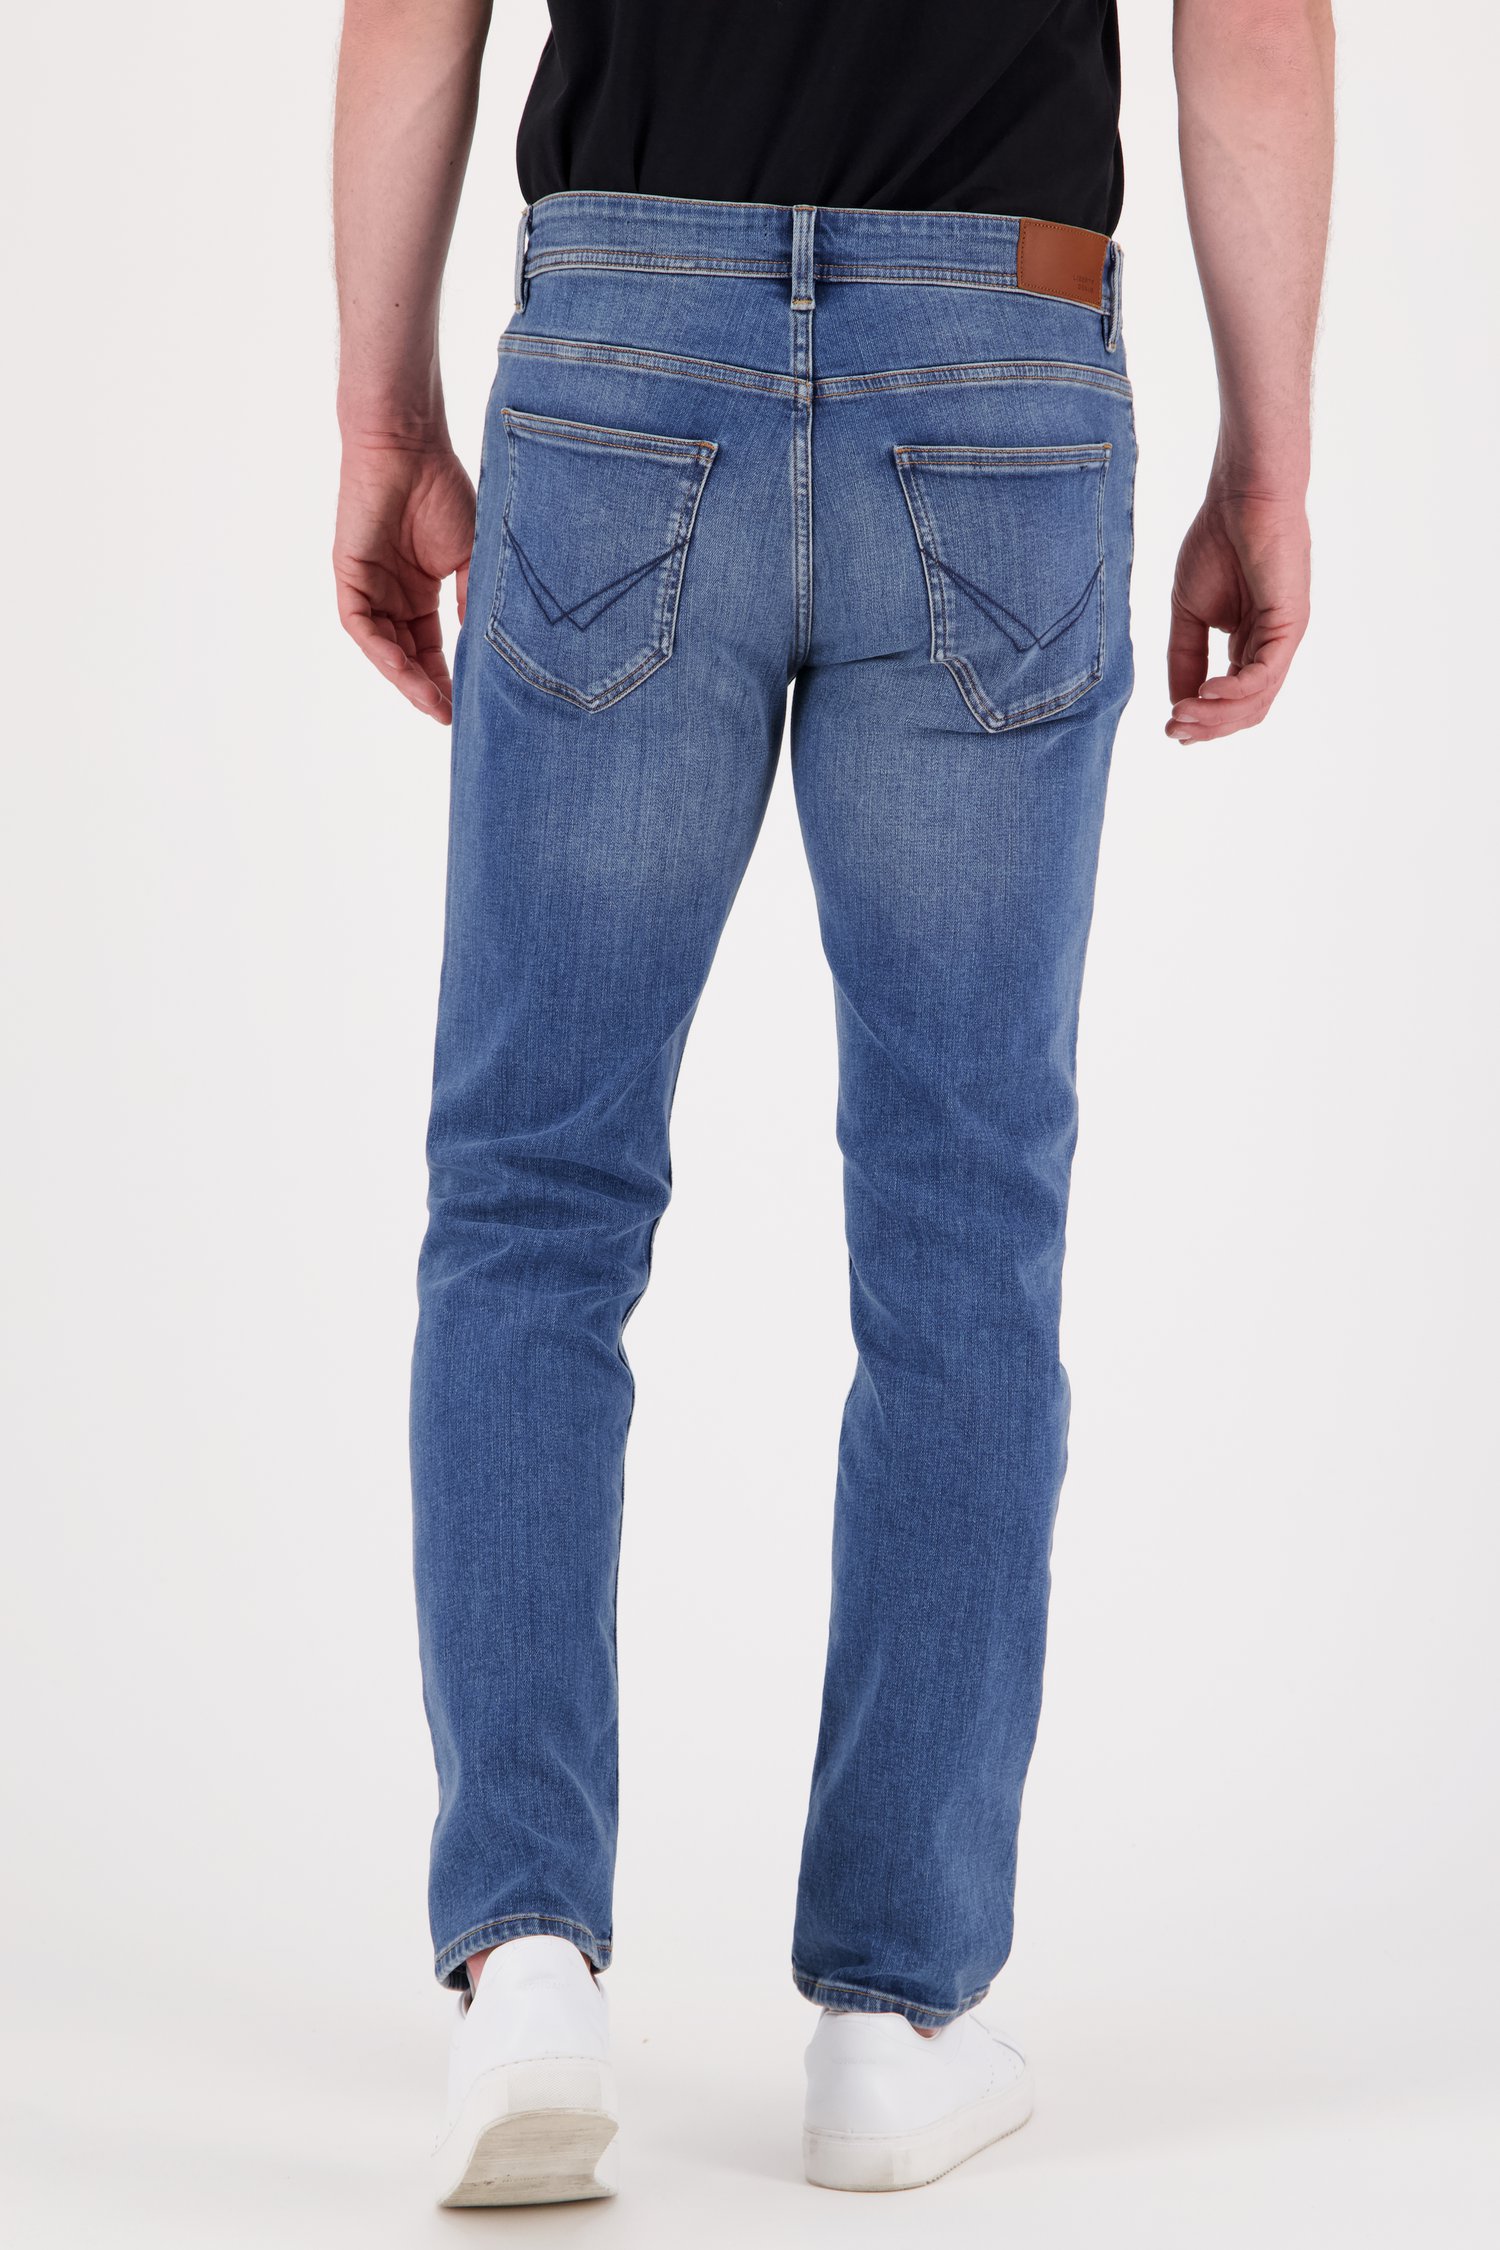 Jeans bleu moyen - Lars - slim fit - L32 de Liberty Island Denim pour Hommes